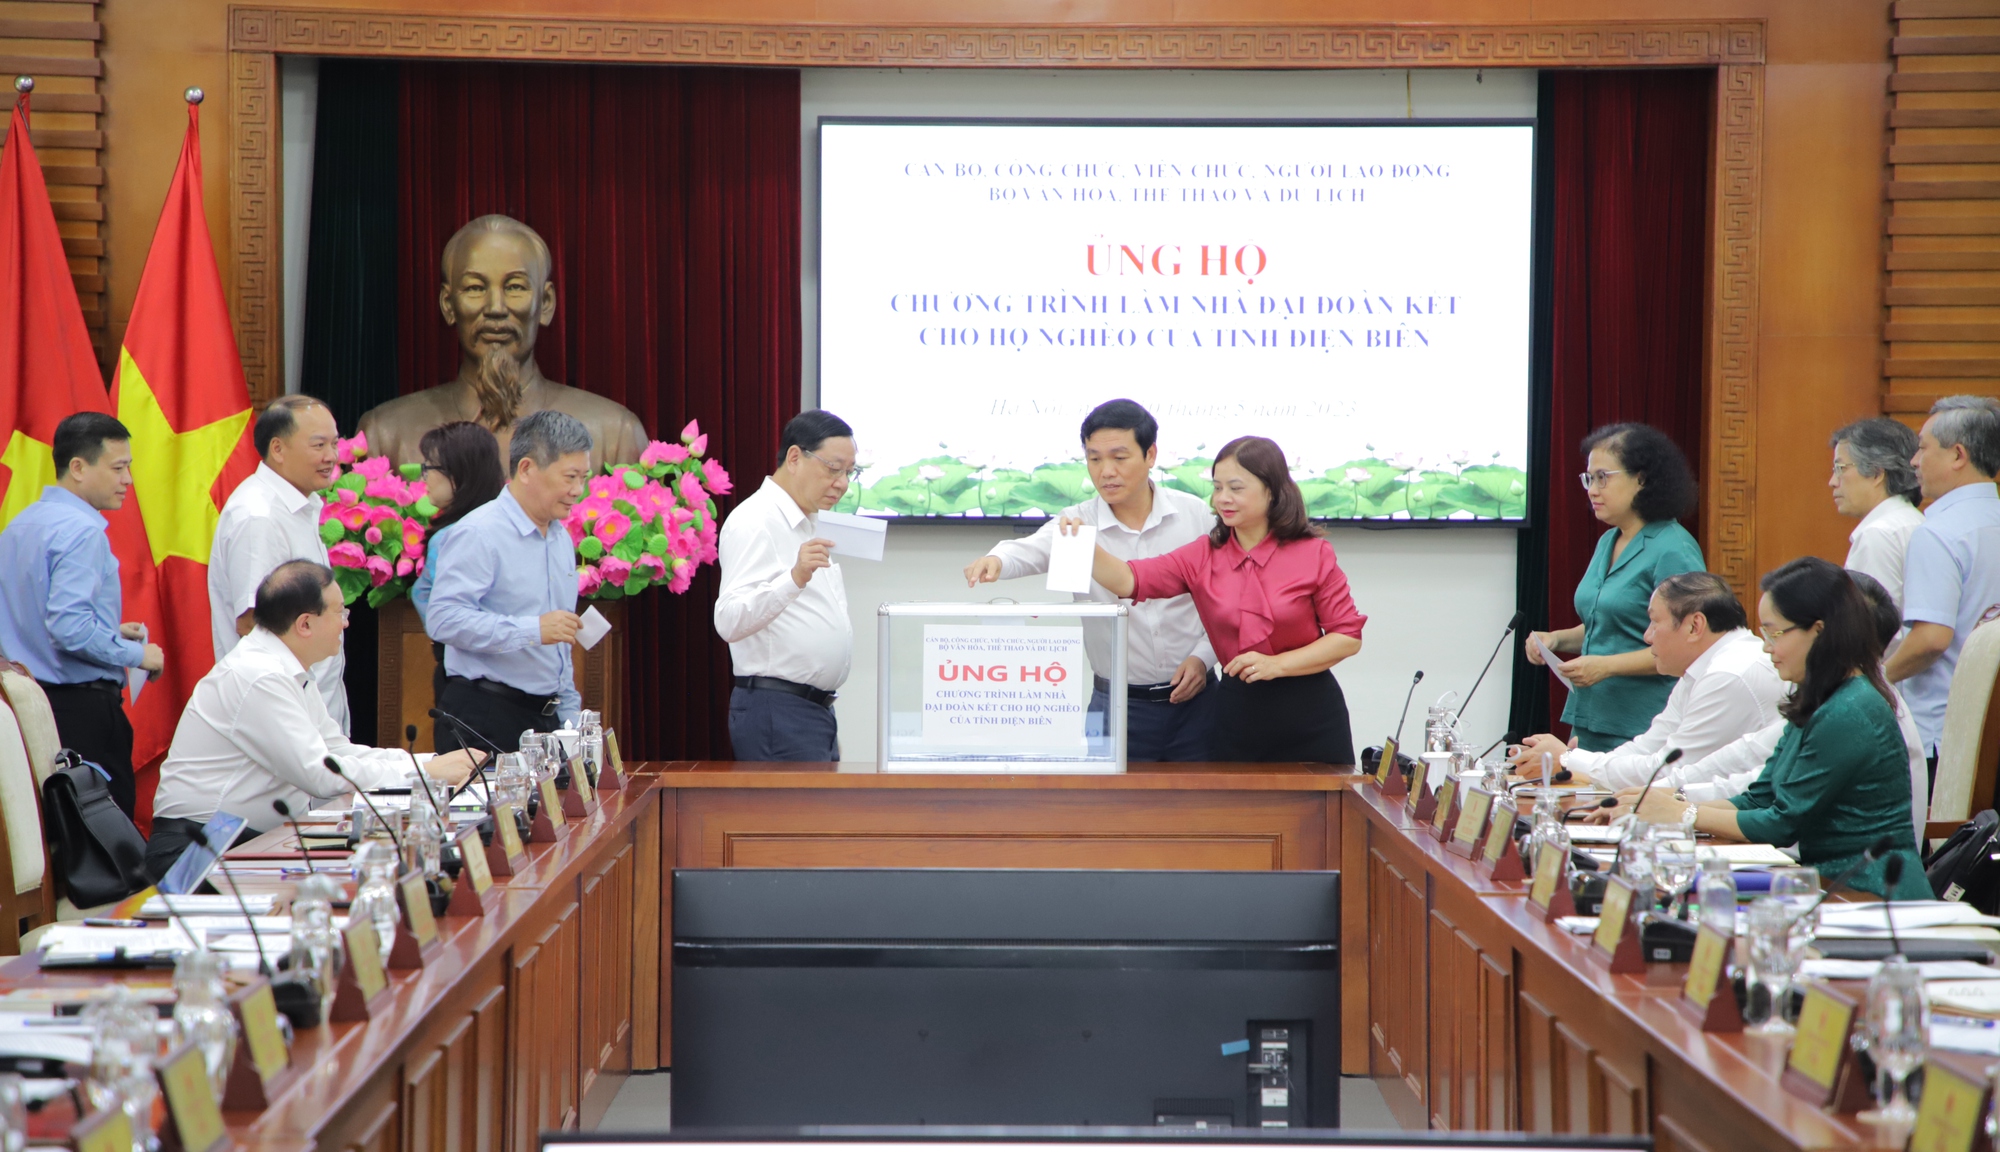 Bộ VHTTDL ủng hộ Chương trình xây nhà đại đoàn kết cho hộ nghèo của tỉnh Điện Biên - Ảnh 7.